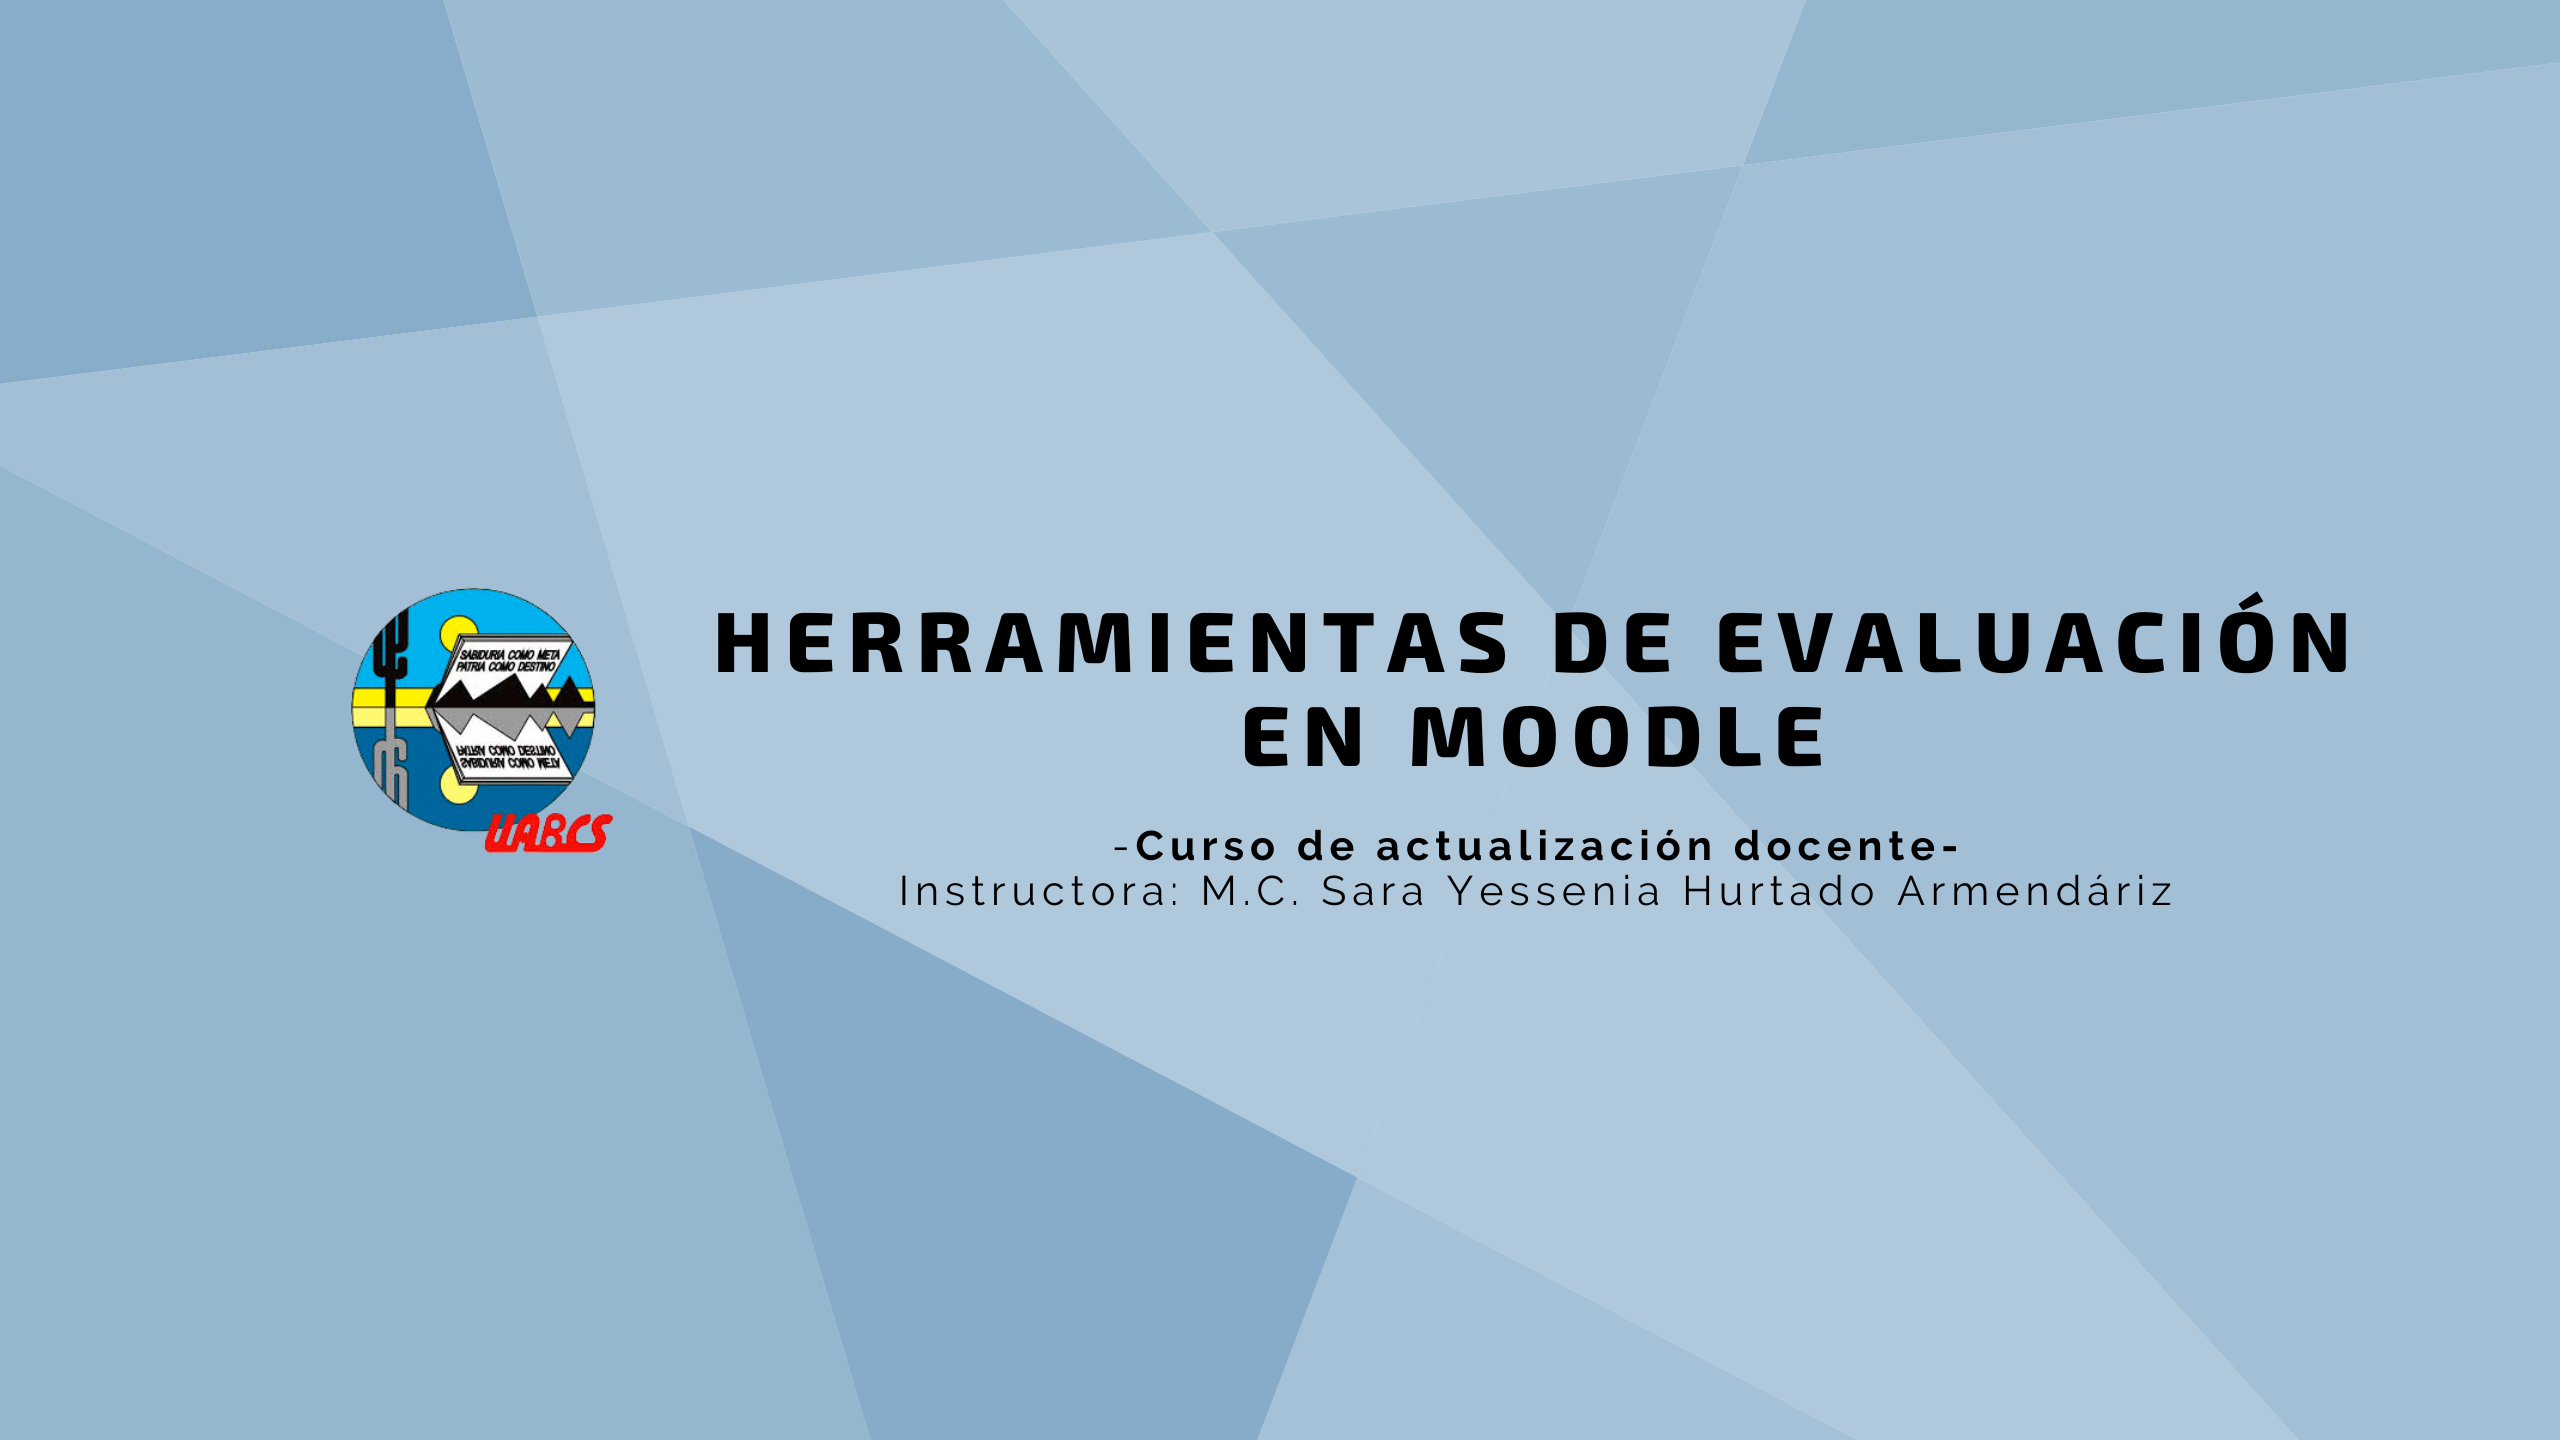 Course Image Herramientas de evaluación en Moodle